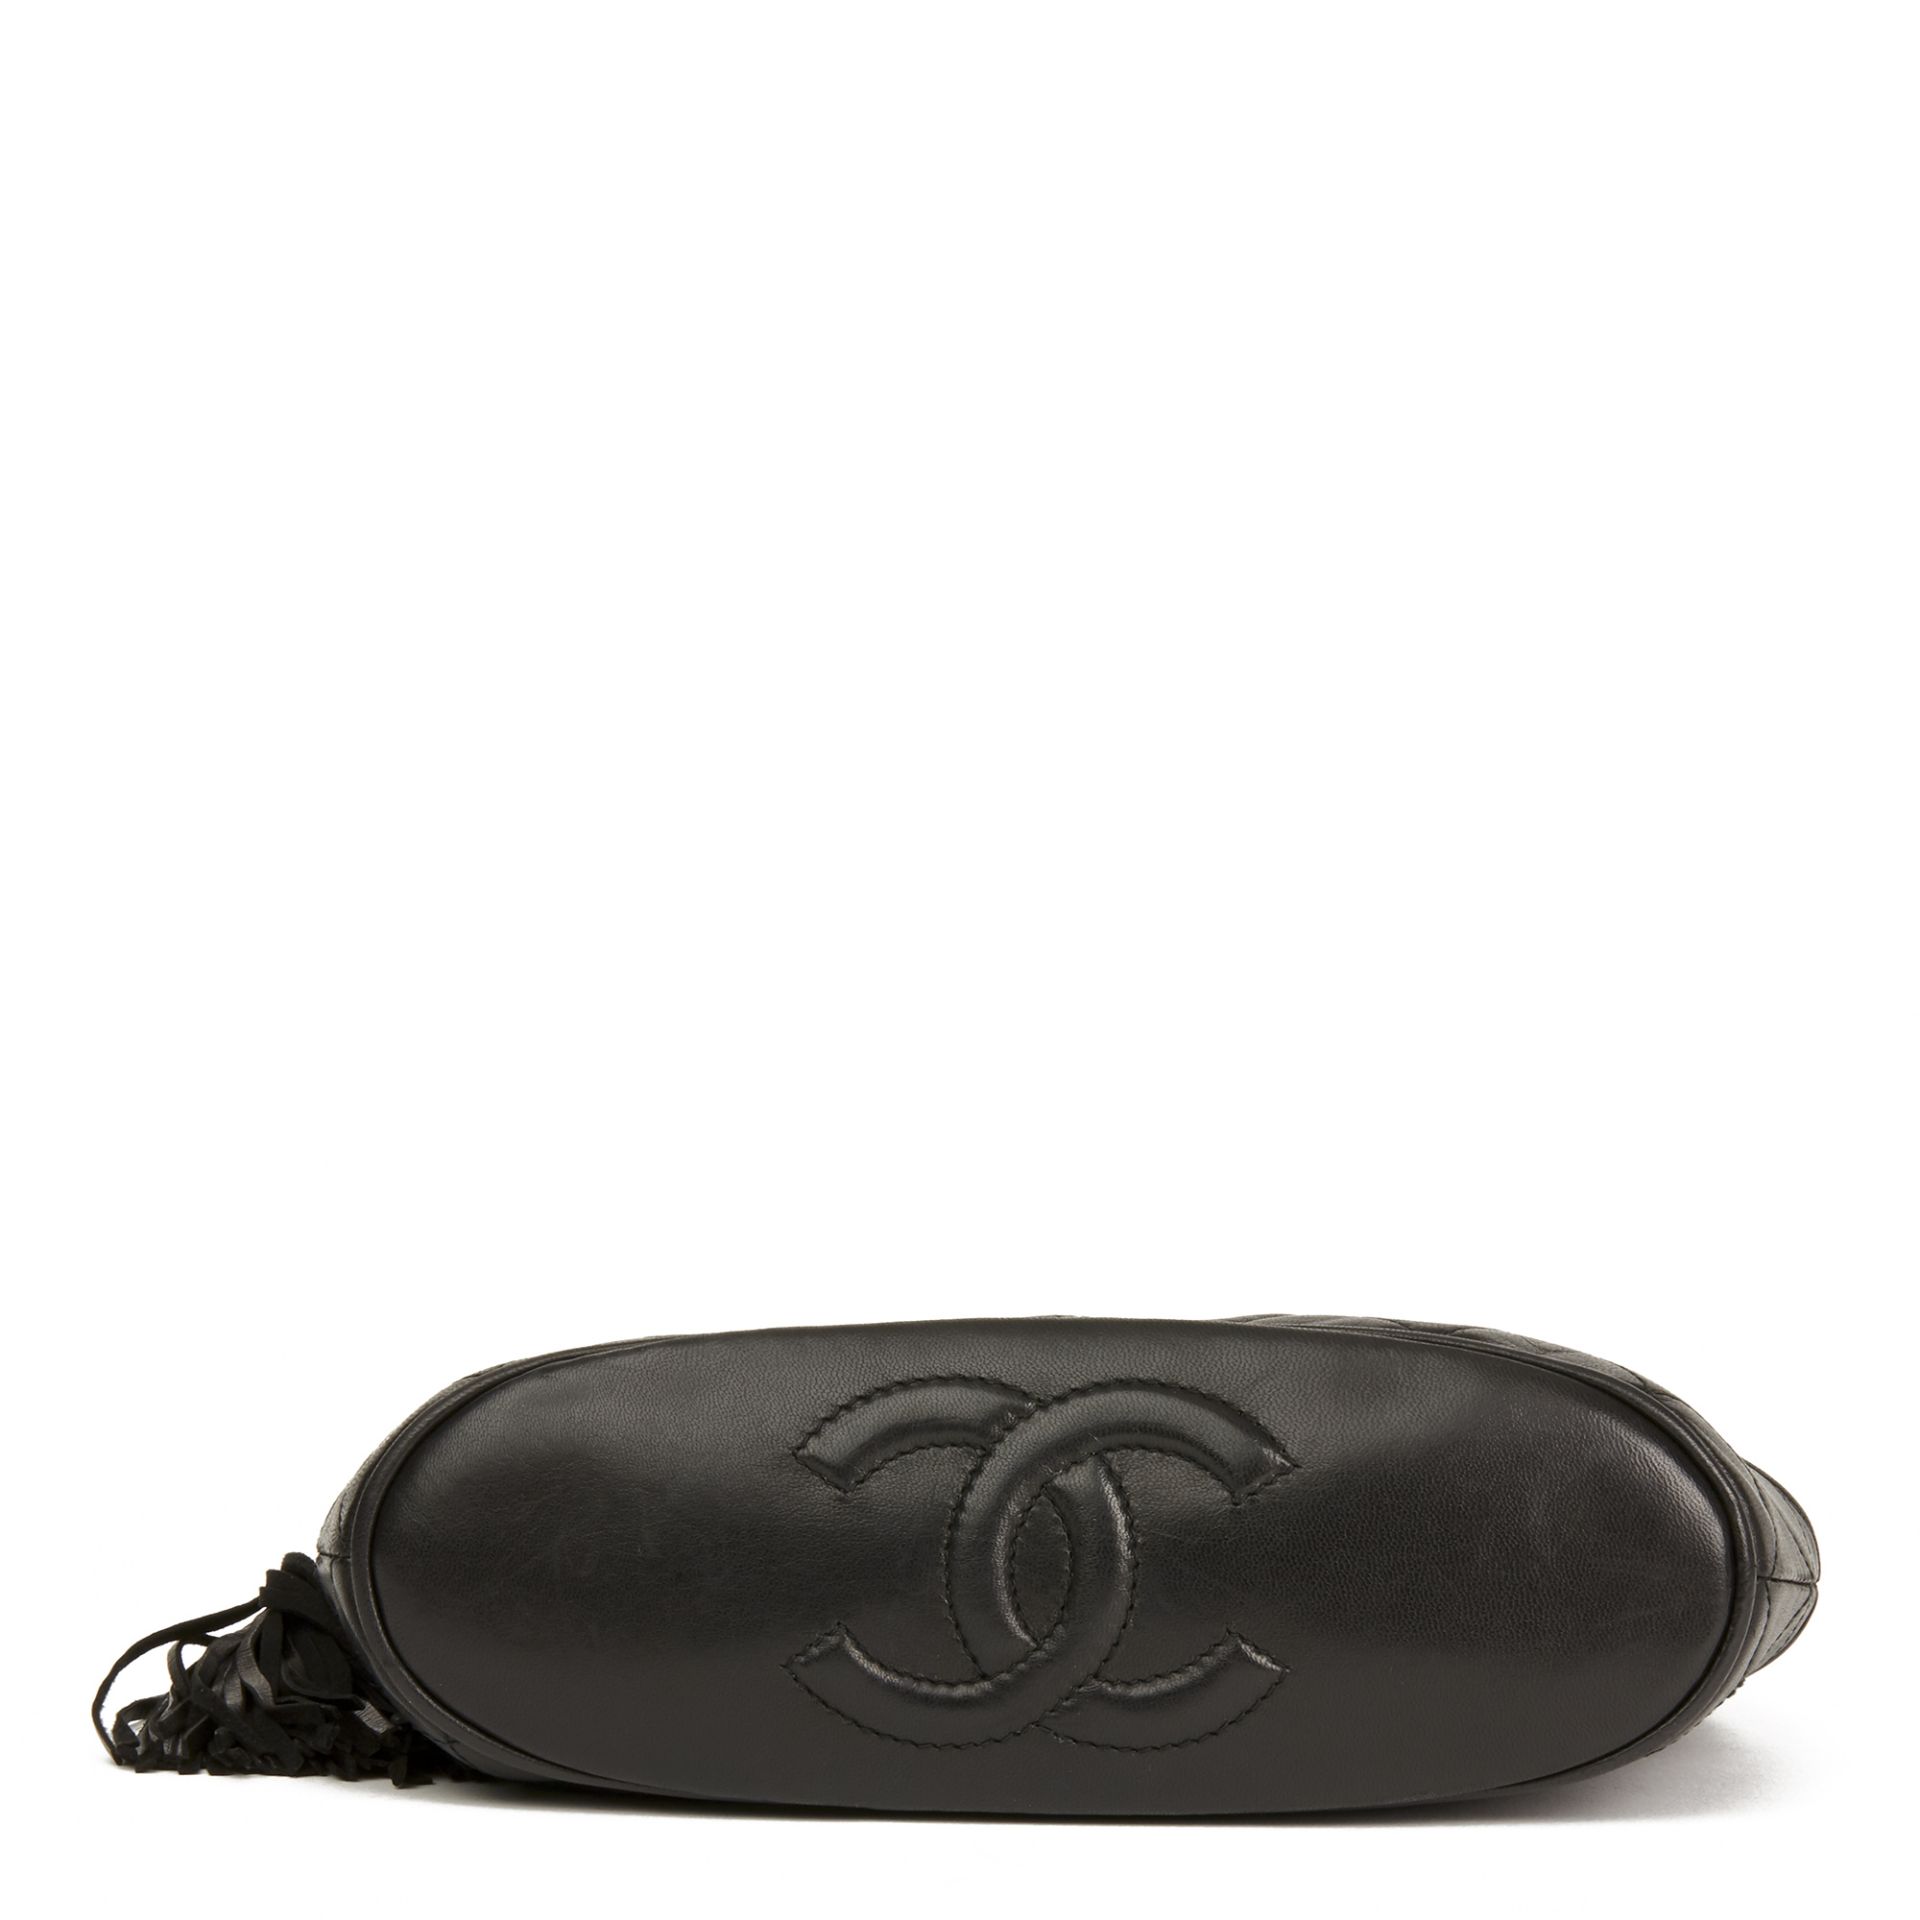 Chanel Black Quilted Lambskin Vintage Timeless Fringe Bucket Bag - Image 8 of 11